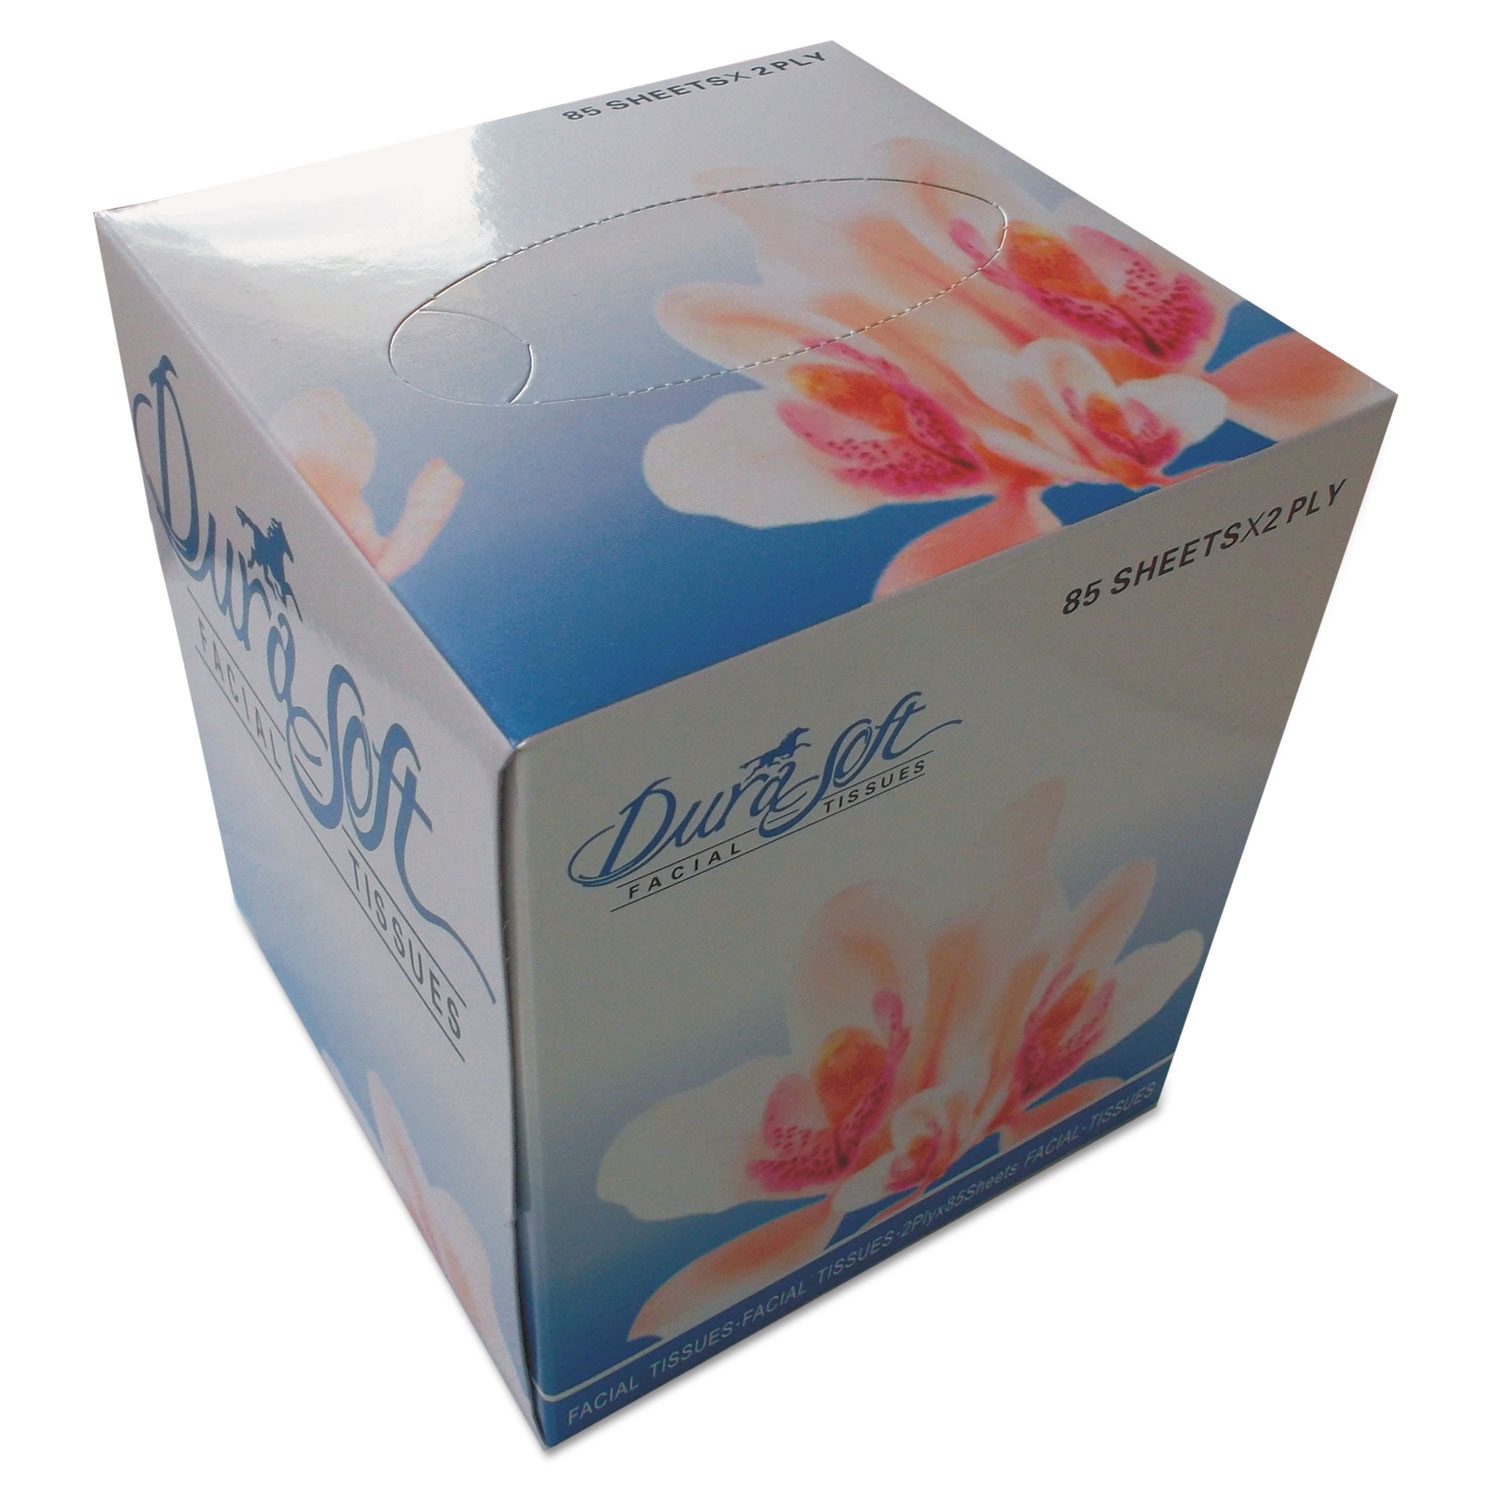  GEN GEN852E Facial Tissue Cube Box, 2-Ply, White, 85 Sheets/Box, 36 Boxes/Carton (GEN852E) 